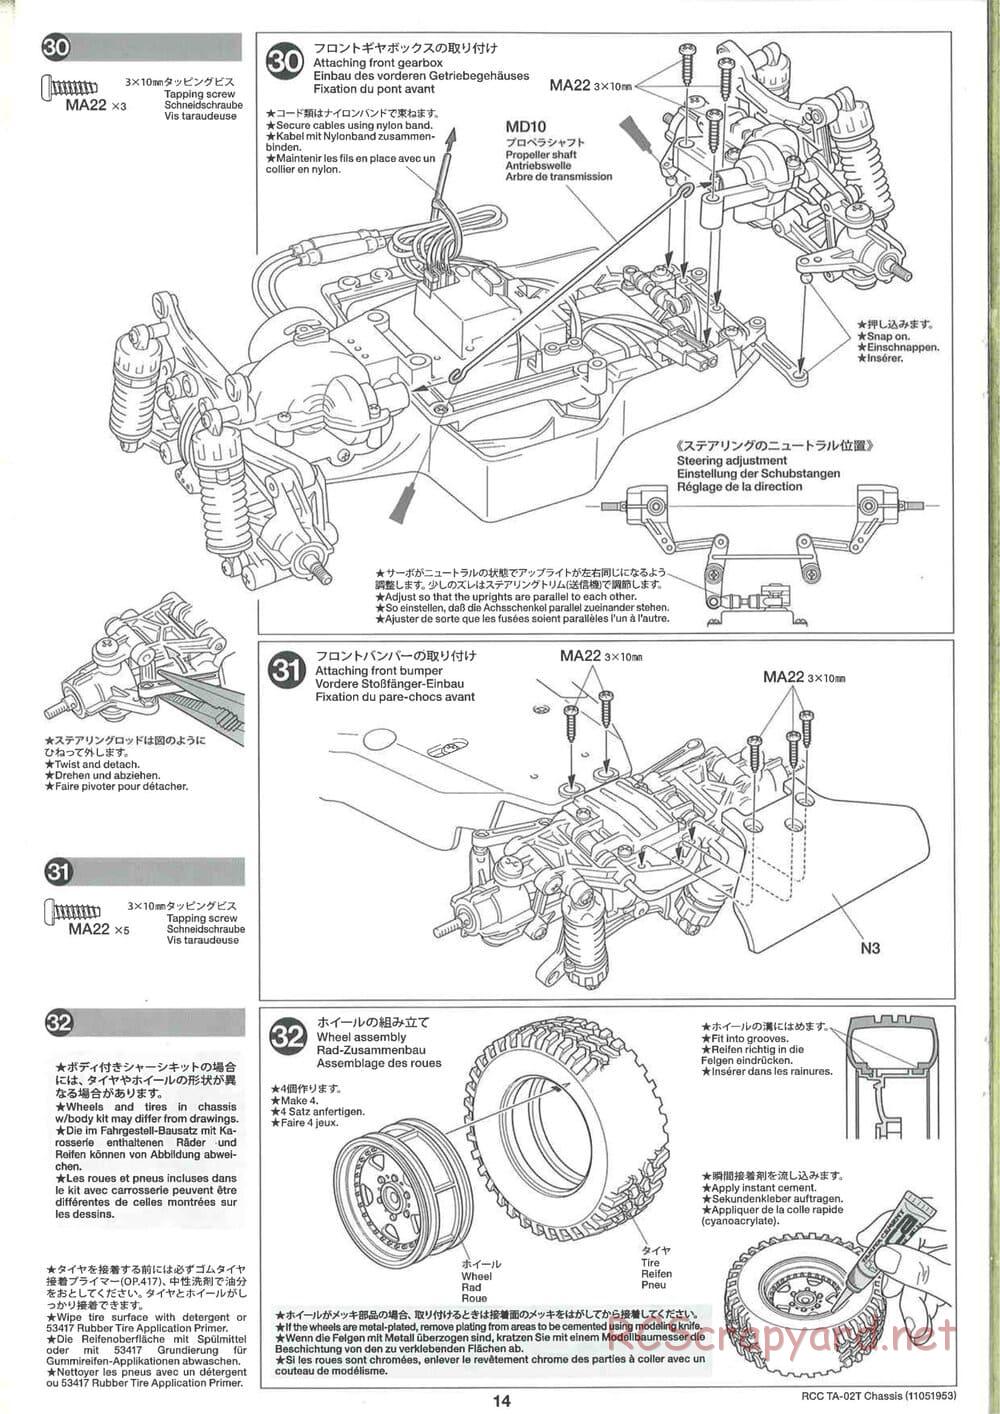 Tamiya - TA-02T Chassis - Manual - Page 14